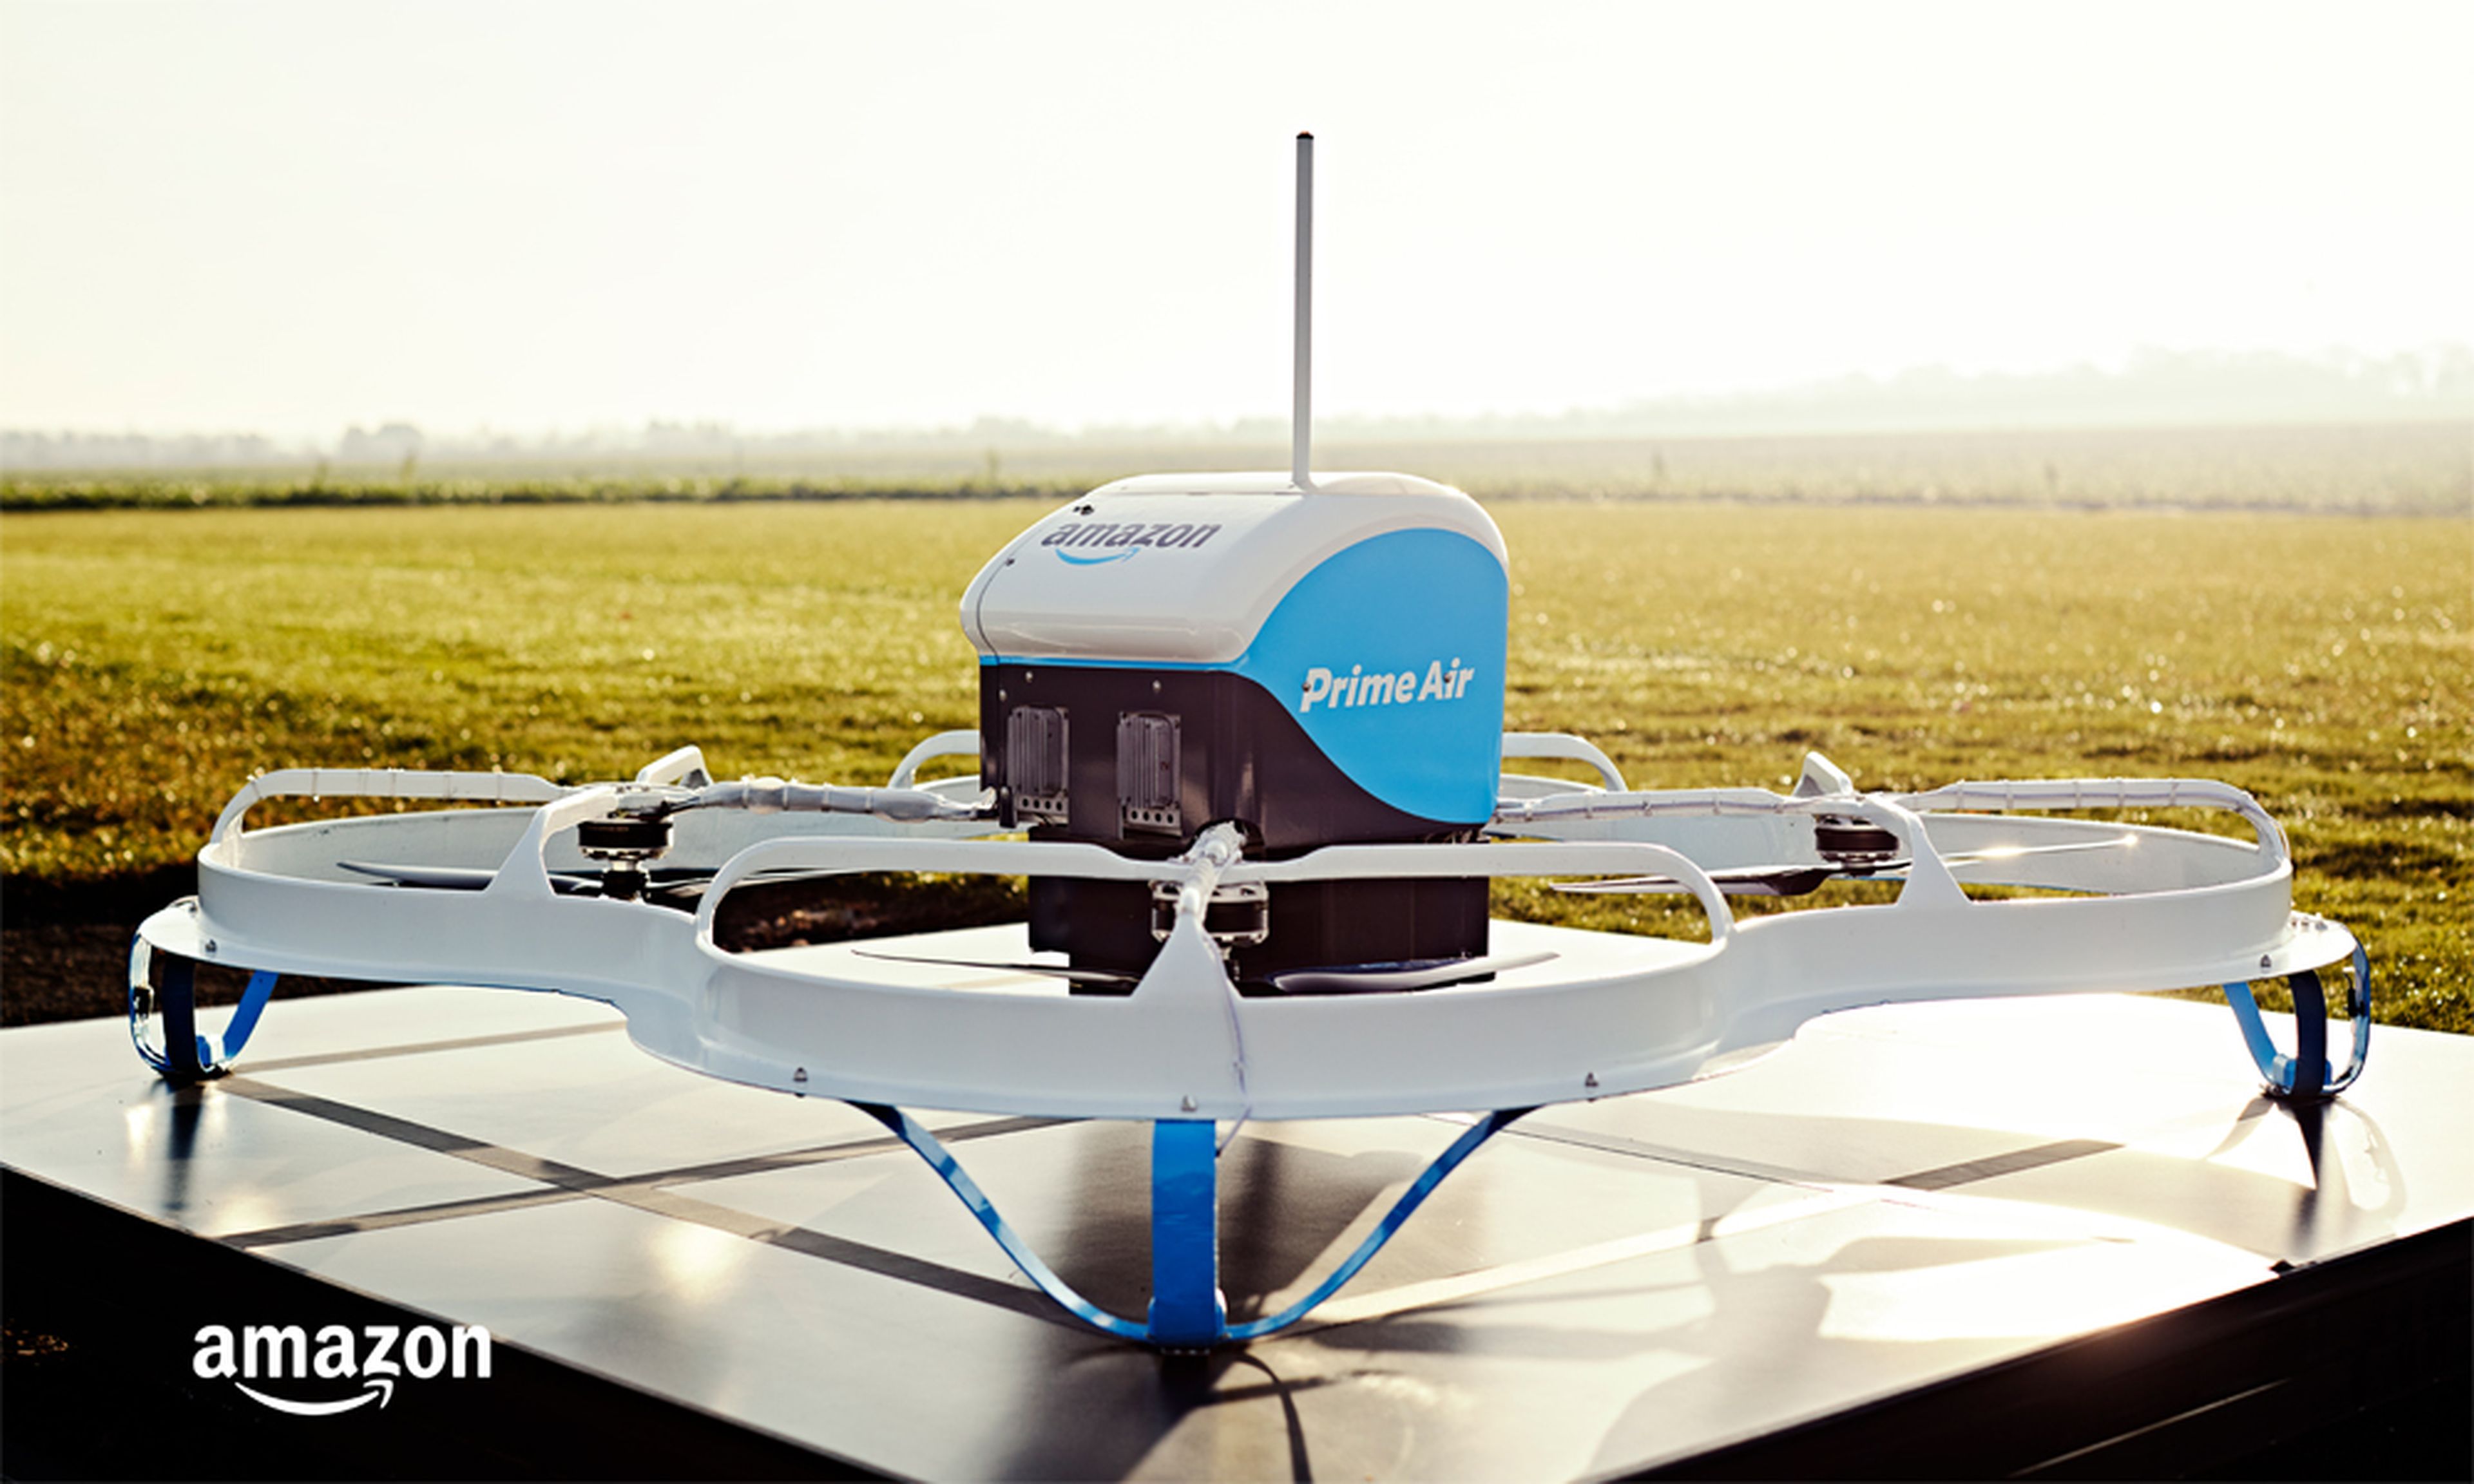 VÍDEO: Amazon hace la primera entrega con drones